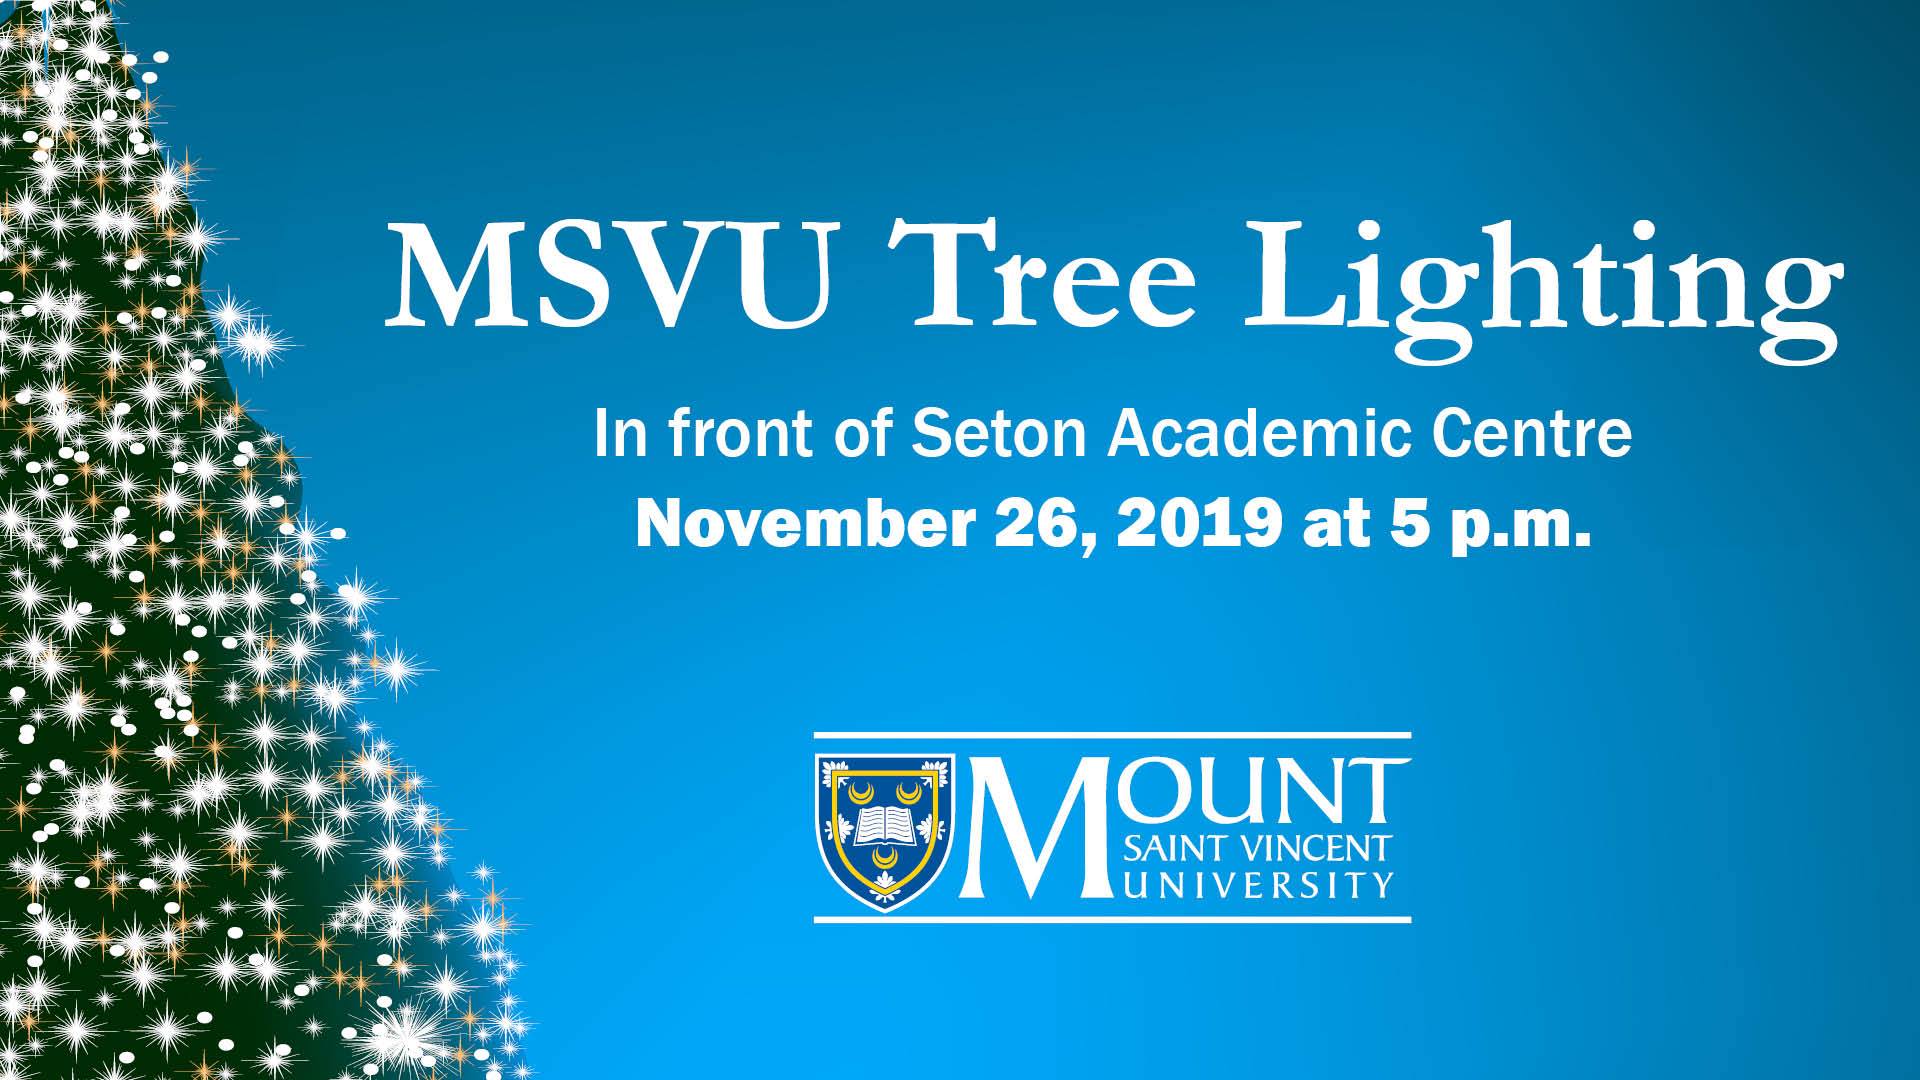 MSVU Tree Lighting